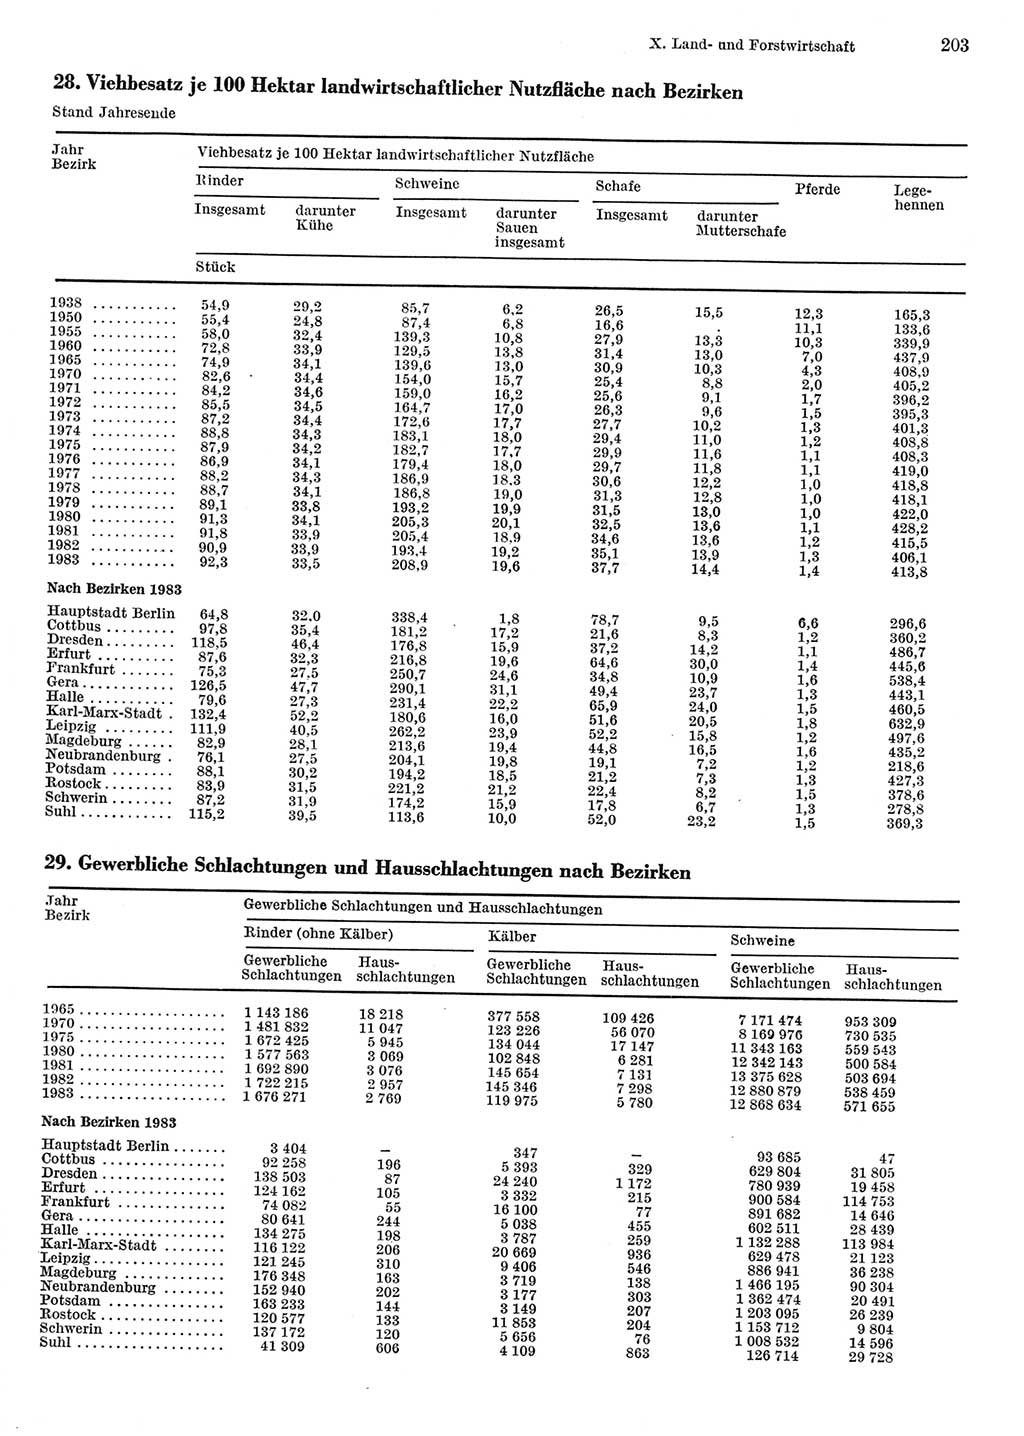 Statistisches Jahrbuch der Deutschen Demokratischen Republik (DDR) 1984, Seite 203 (Stat. Jb. DDR 1984, S. 203)